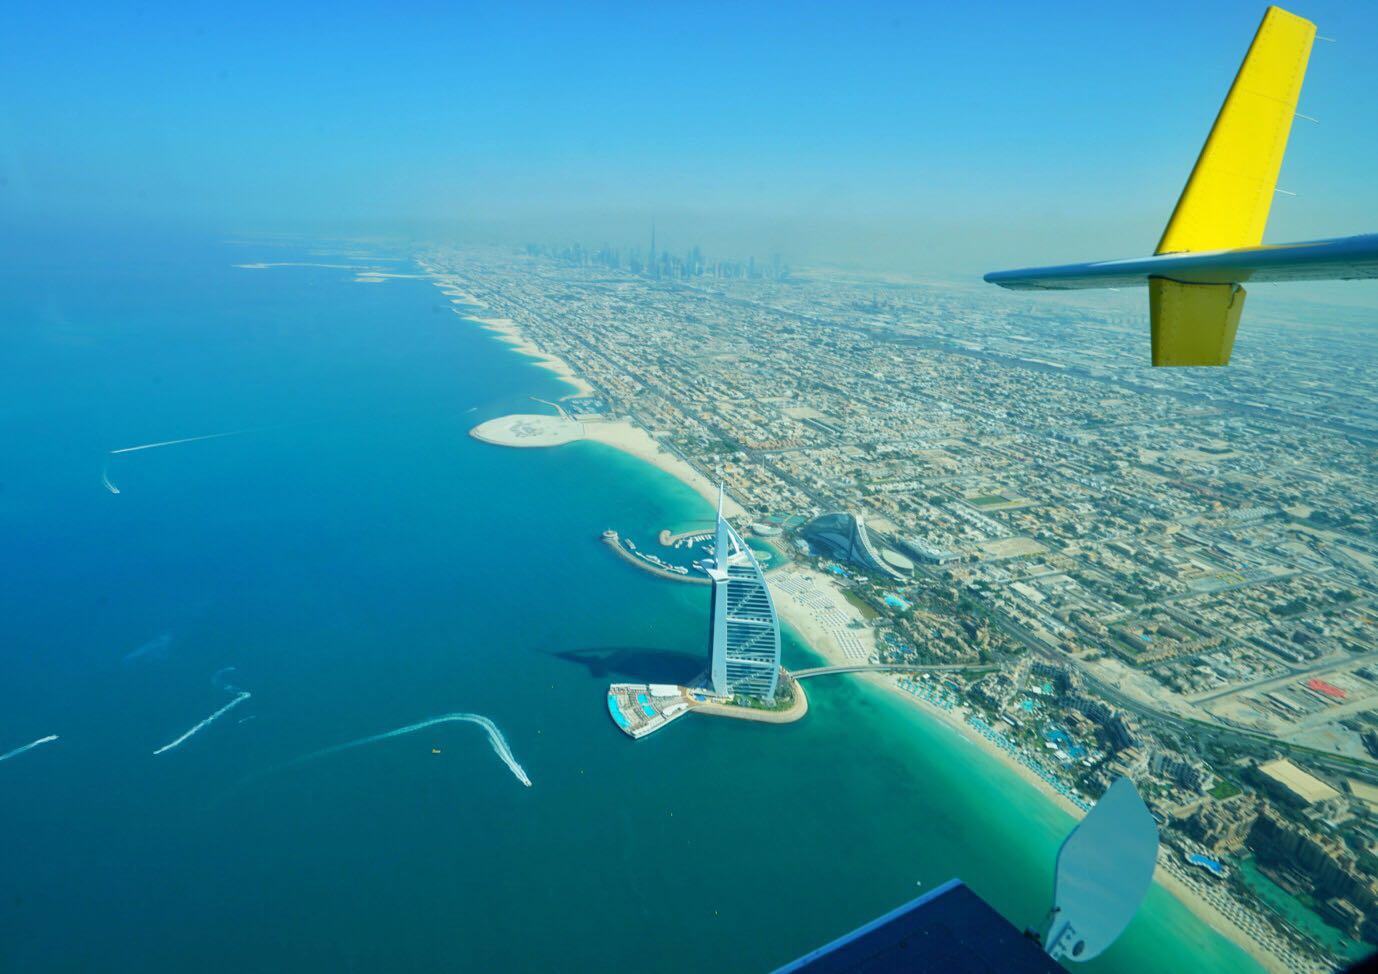 是迪拜优秀的酒店之一,酒店所处位置优越,两侧是迪拜海岸,酒店邻近